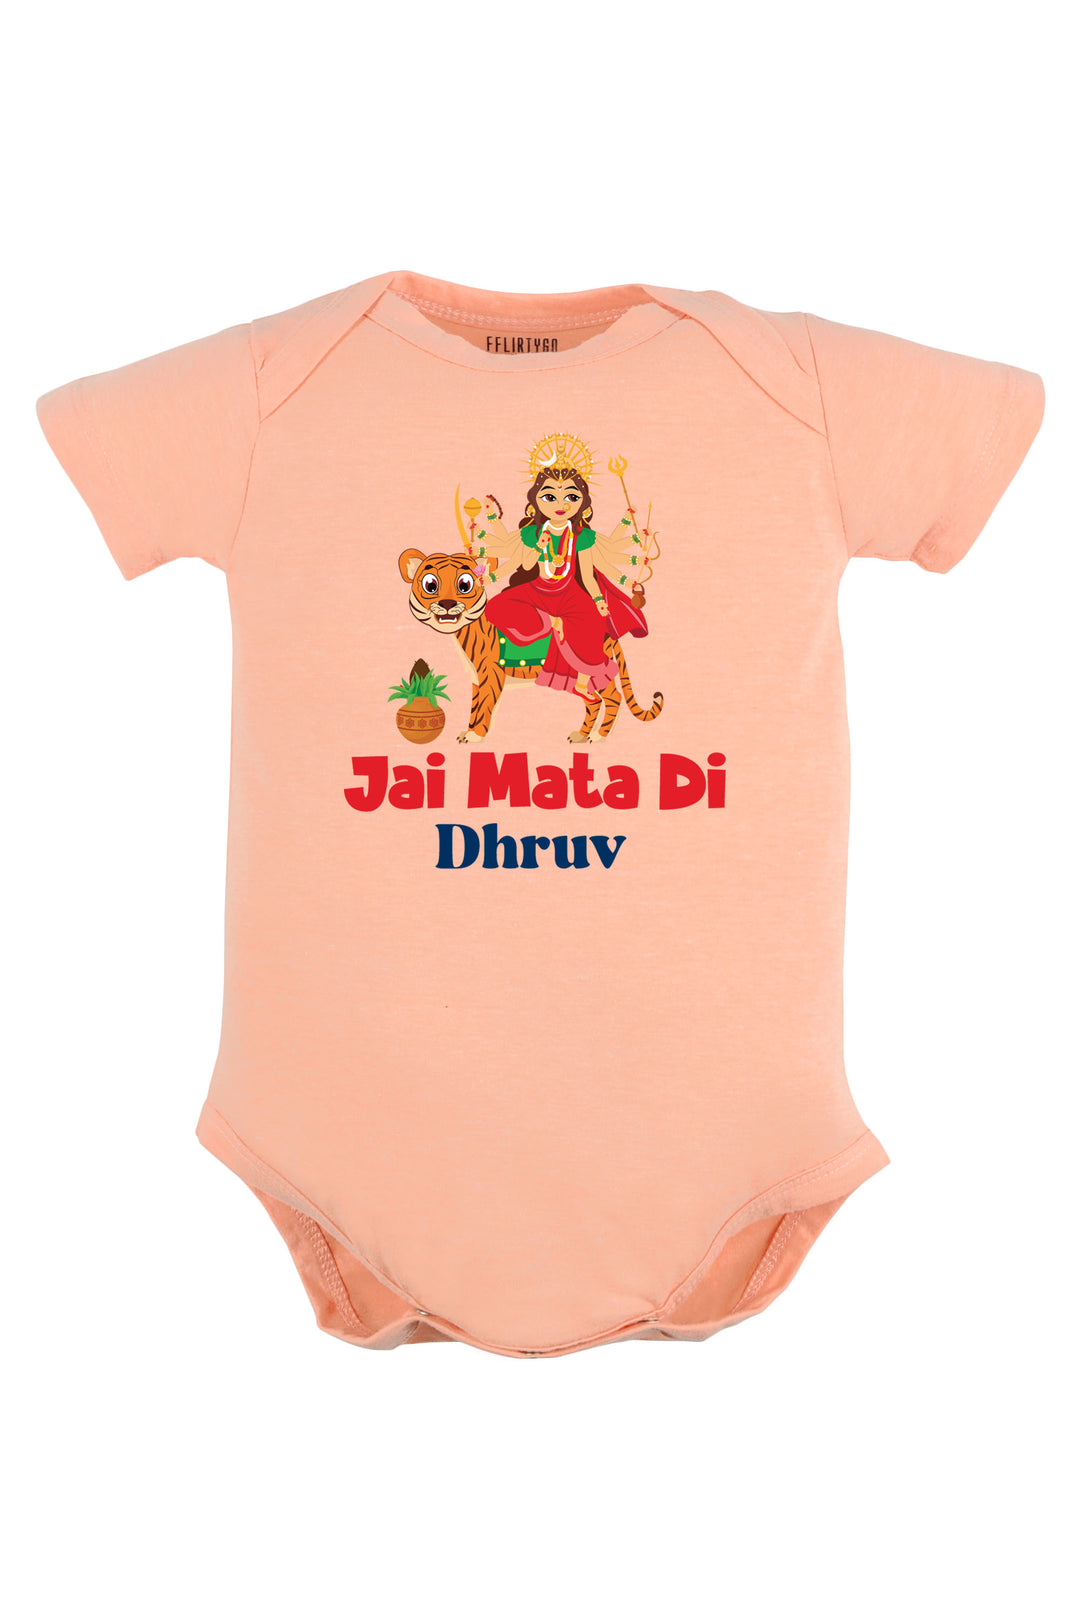 Jai Mata Di Baby Romper | Onesies w/ Custom Name